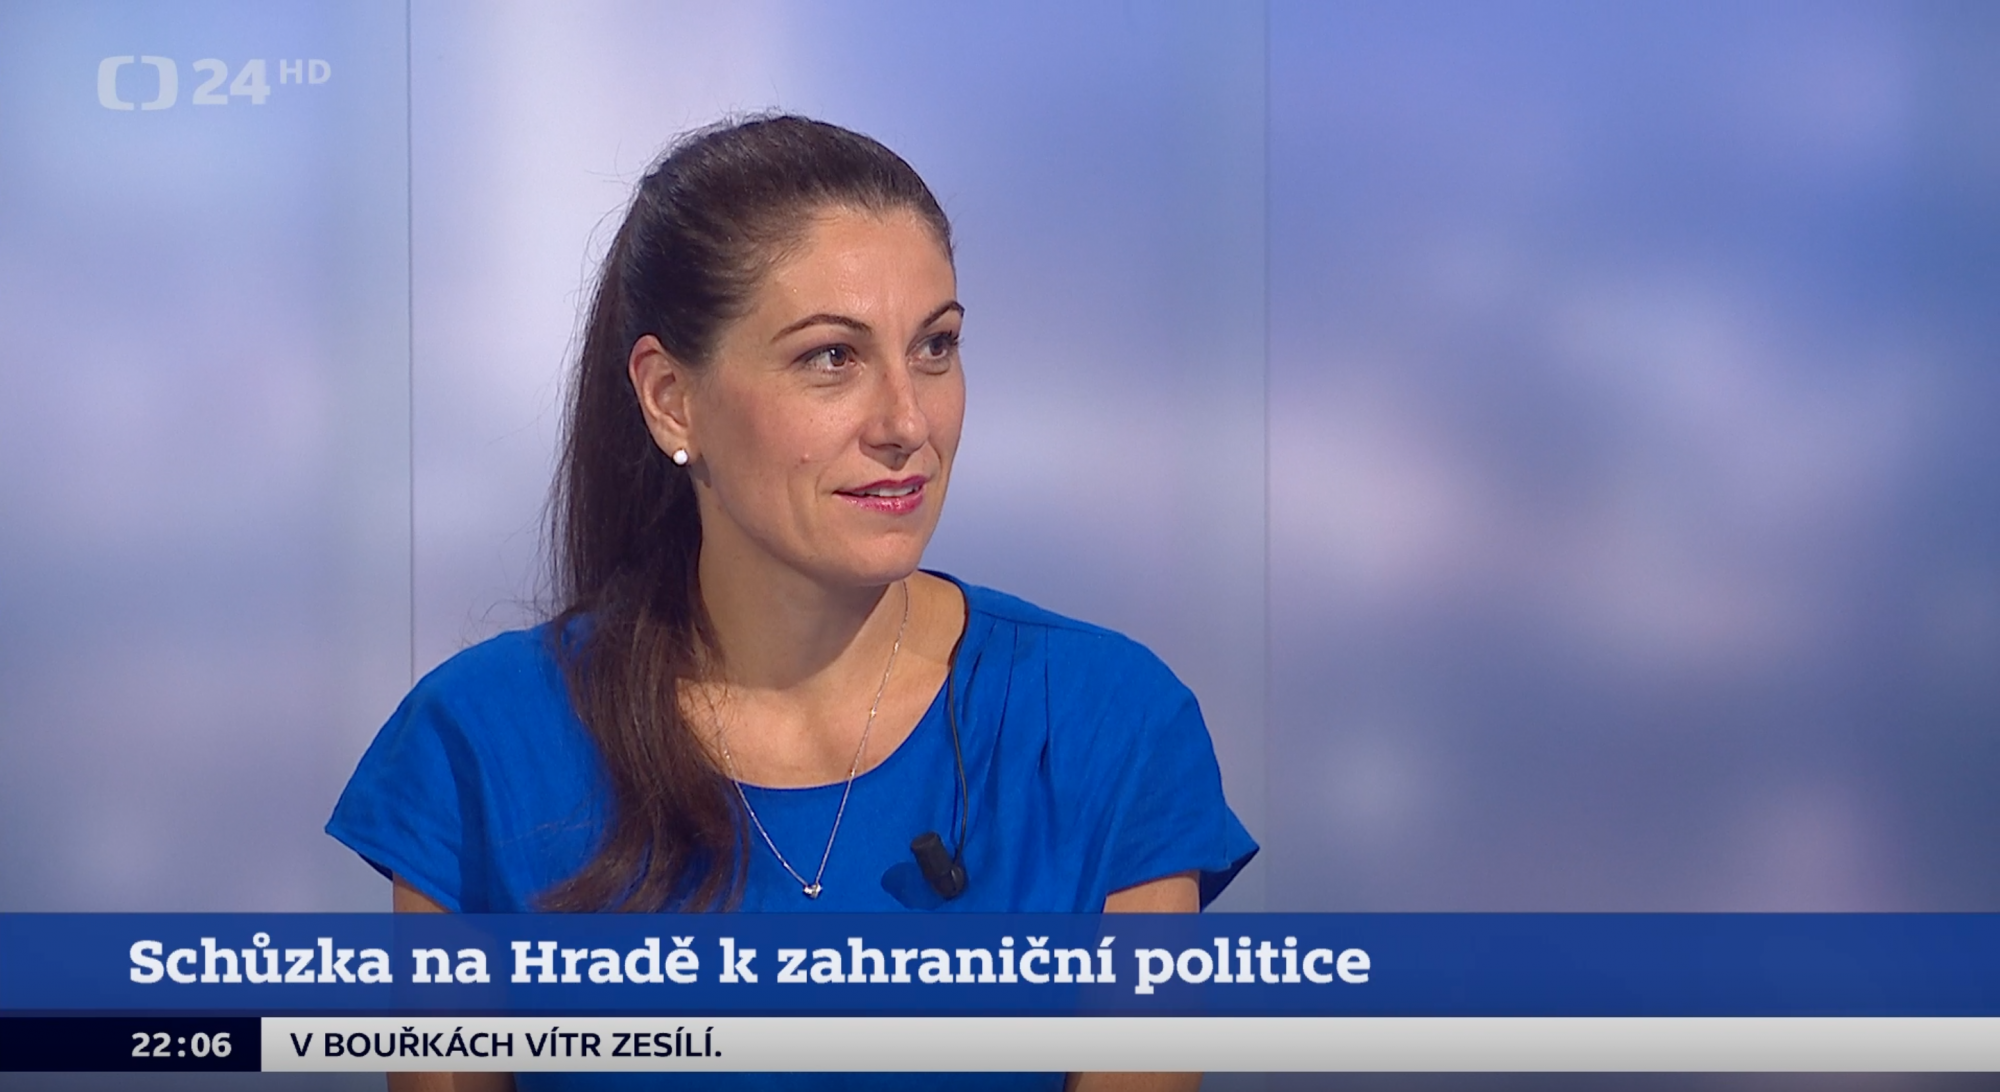 Eva Decroix v pořadu Události, komentáře o schůzce na Hradě k zahraniční politice